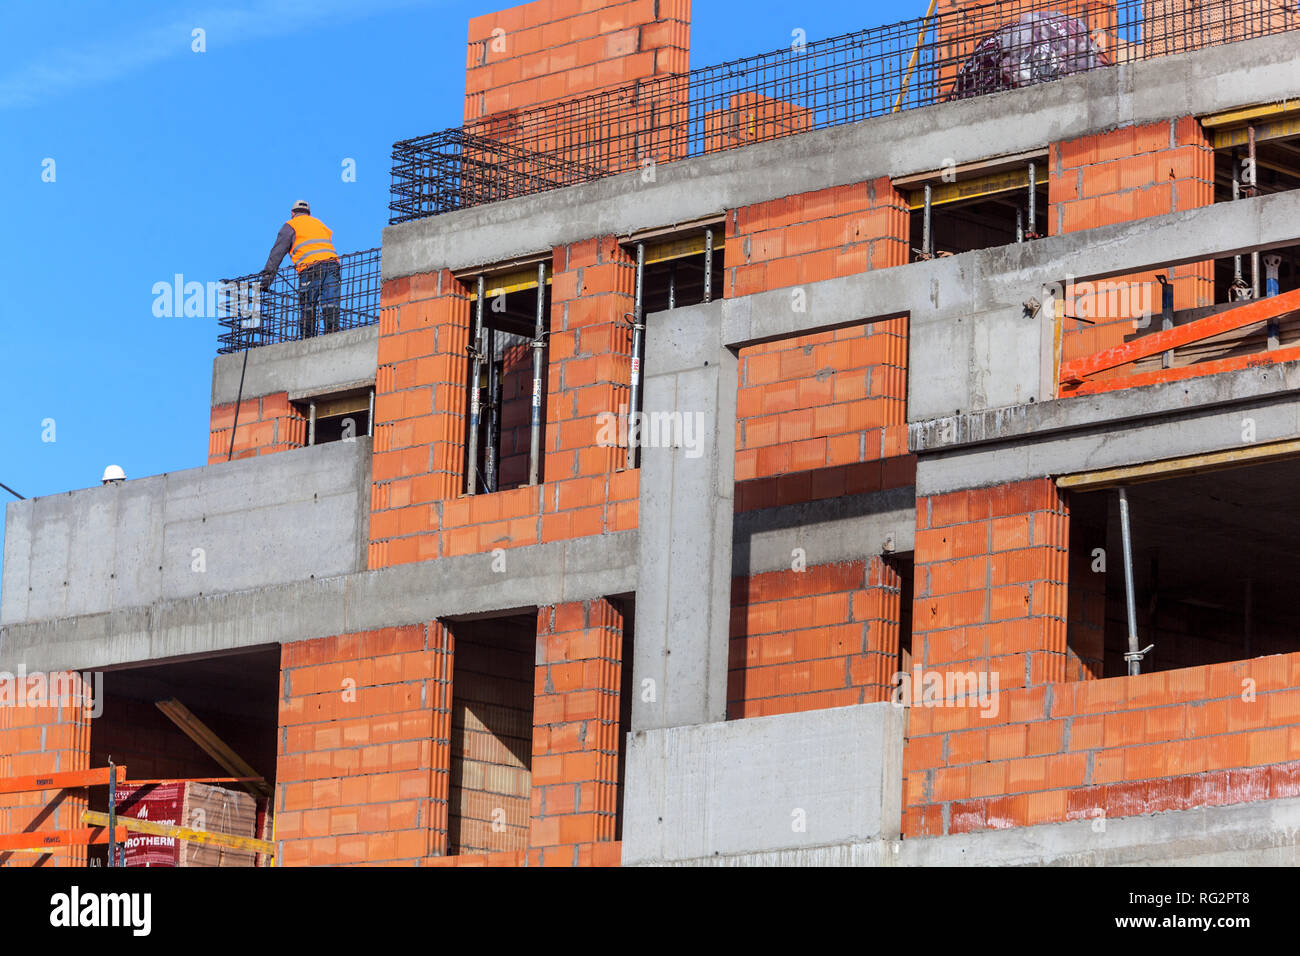 Nuovo cantiere immobiliare edificio calcestruzzo, mattoni una persona lavoratore uomo lavoratore maschio lavoro sito, Praga Repubblica Ceca Foto Stock